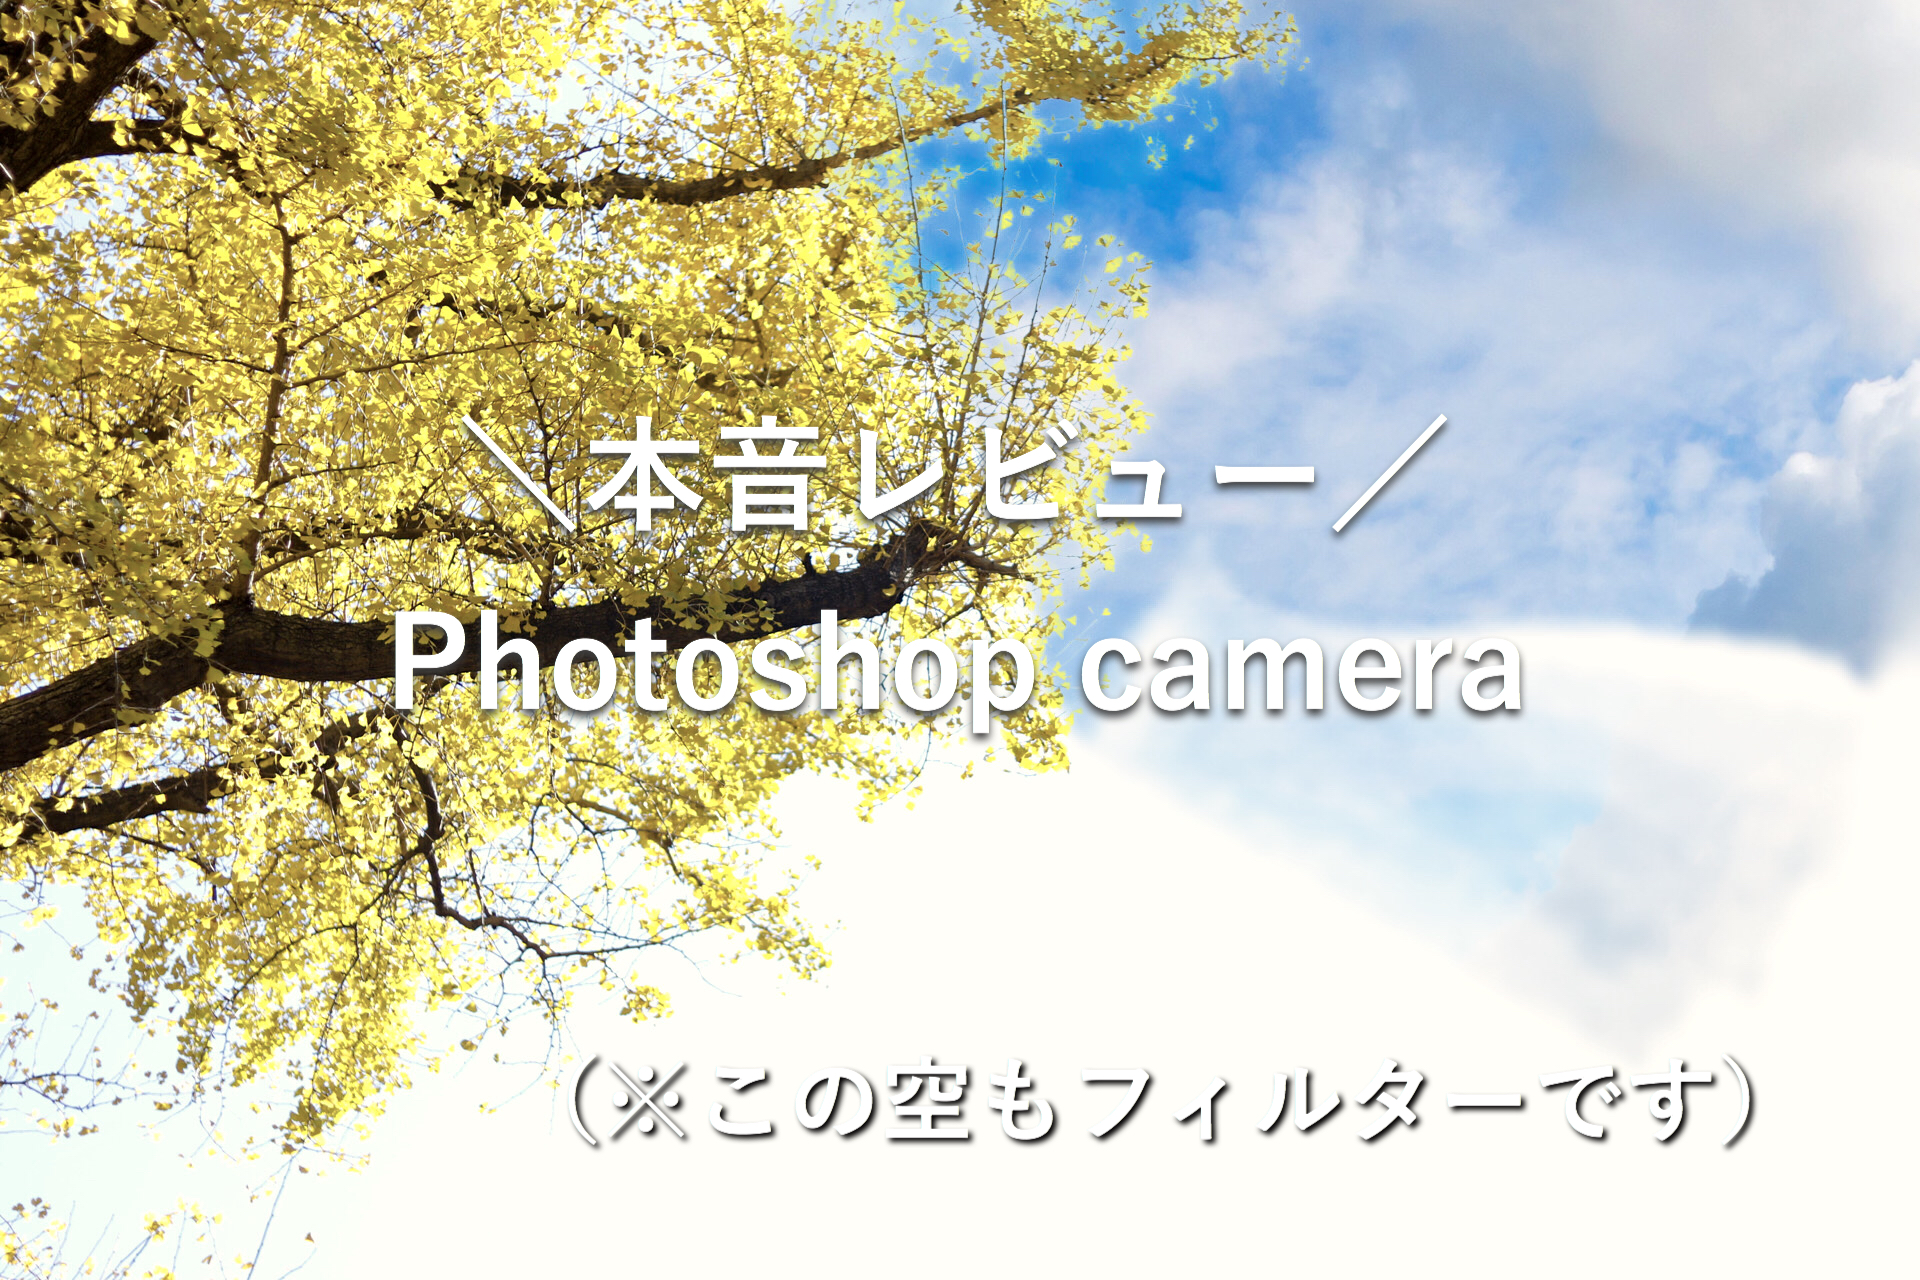 カメラアプリ「Adobe Photoshop Camera」の使い方と本音レビュー